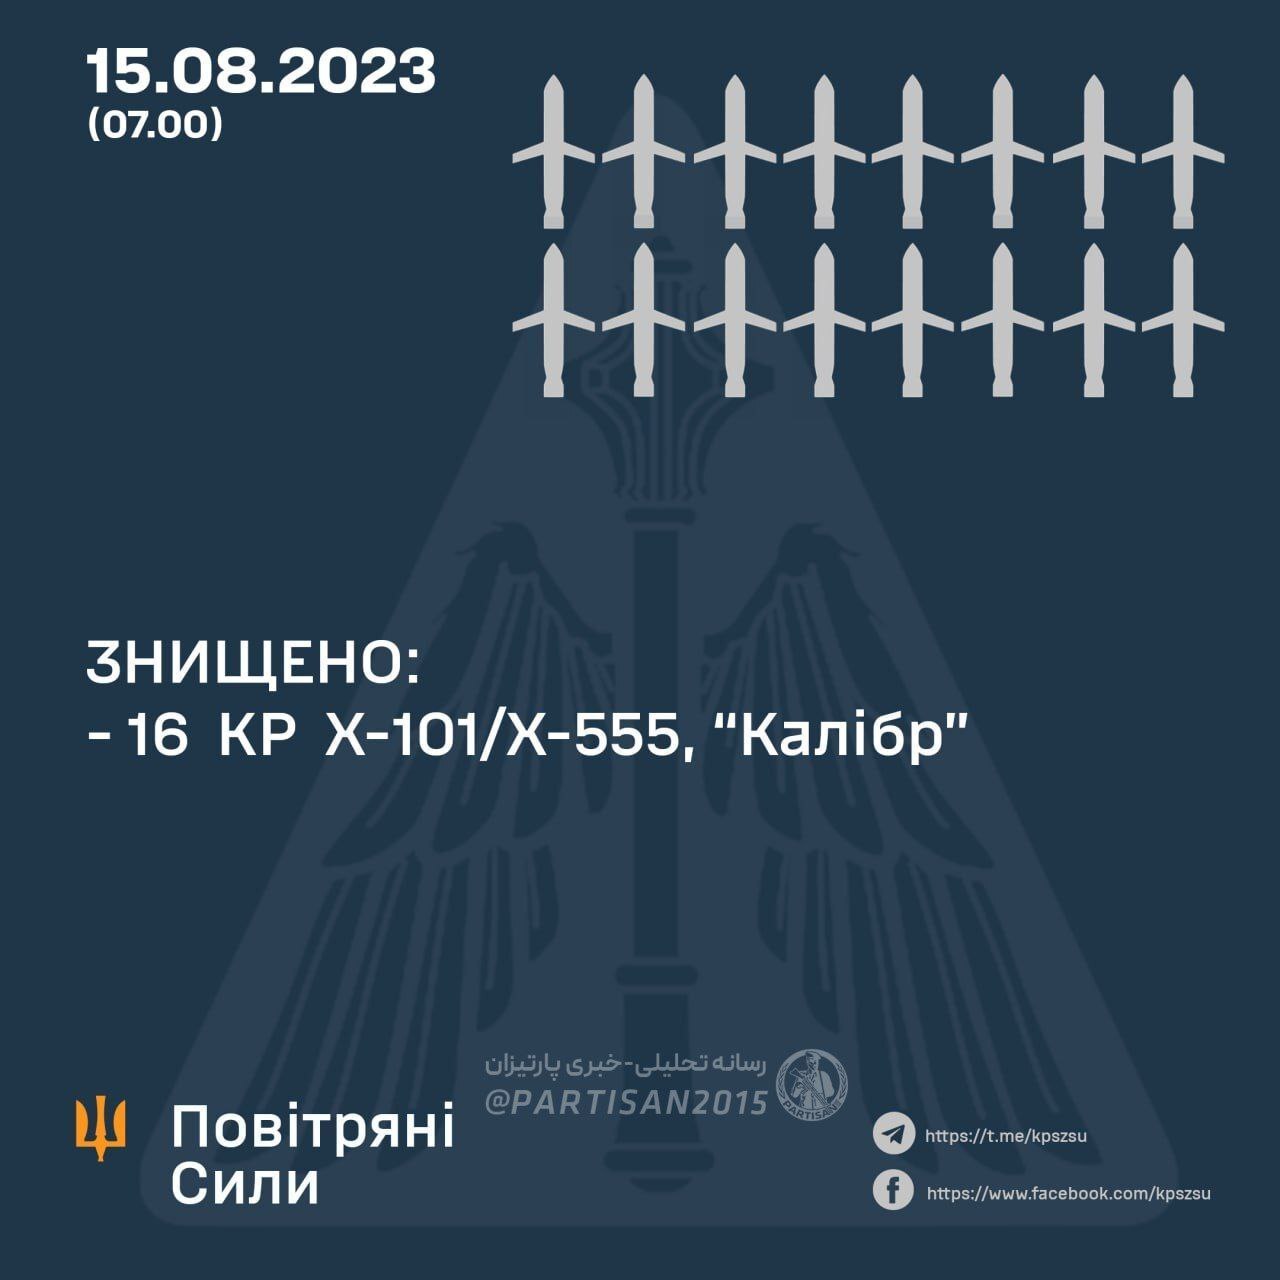 اصابت موشک‌های کروز به صنایع هوافضای یوزماش اوکراین در دنیپرو (+فیلم)